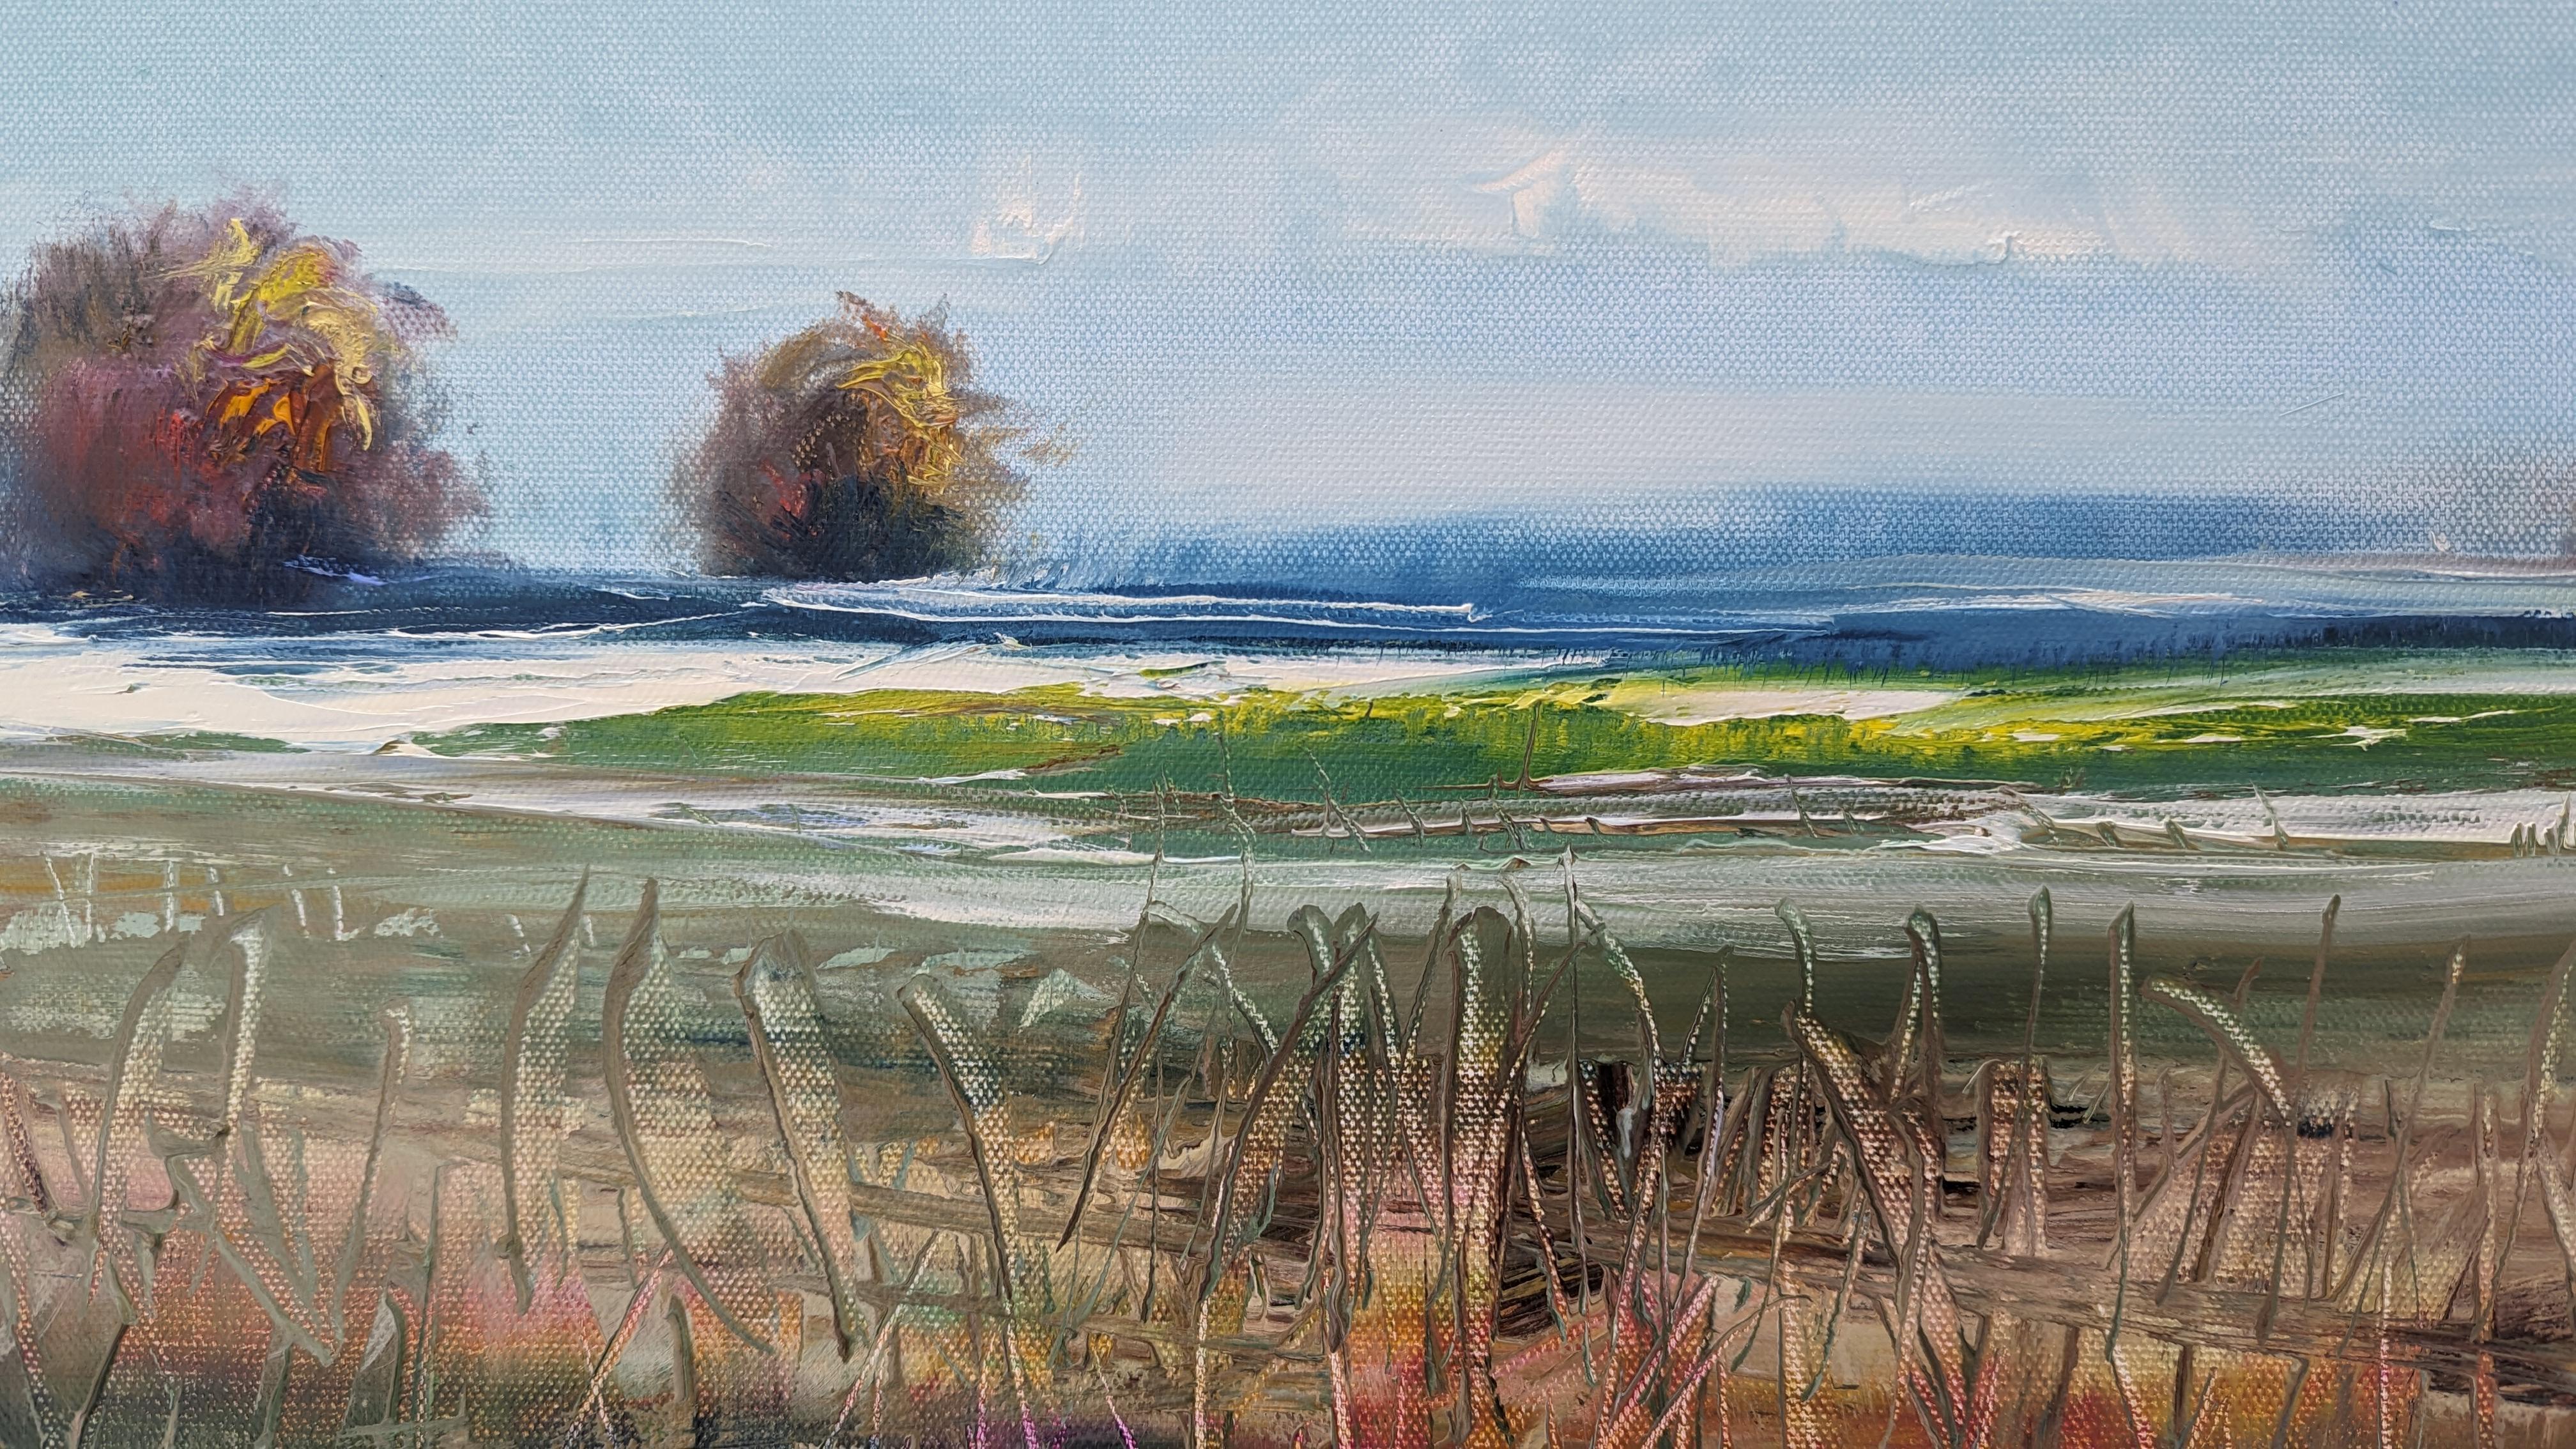 <p>Kommentare des KünstlersEine ruhige Landschaft begrüßt den Beginn des Herbstes.<br> Ein wolkenverhangener Himmel spannt sich über das weite Feld und den Ozean, der mit verstreuten Bäumen und einer Pfütze geschmückt ist. Die Blätter und das Gras,